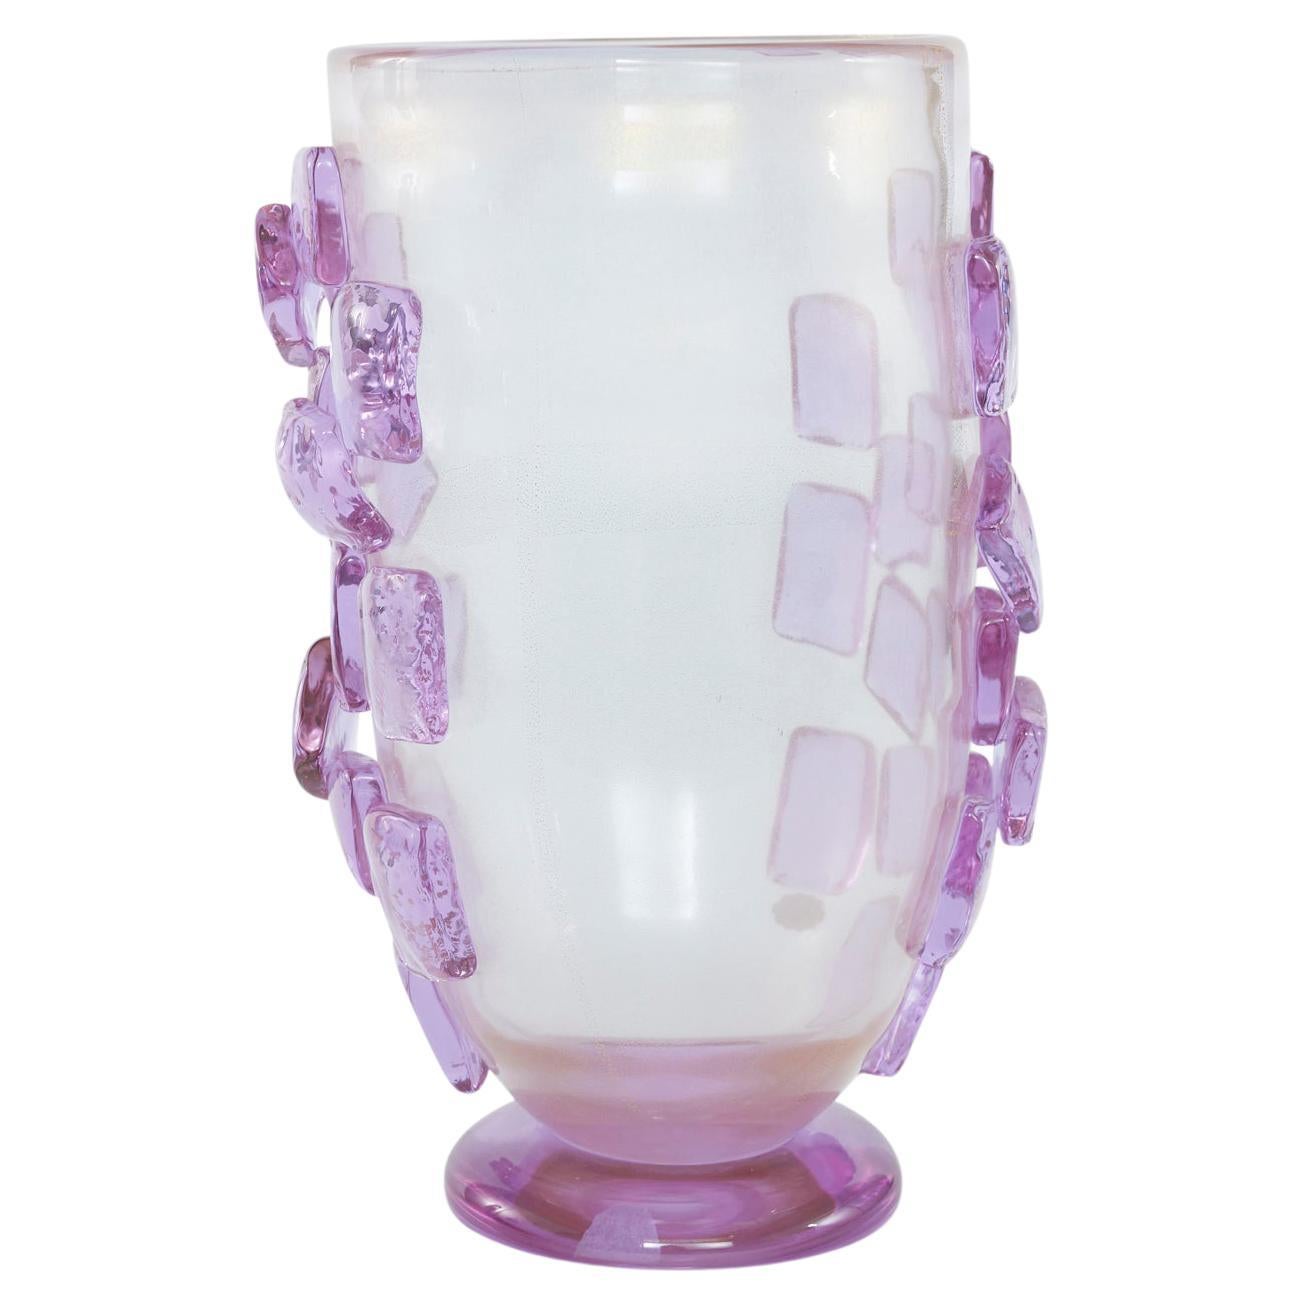 Art Deco Style Murano Glass Decorative Vase For Sale